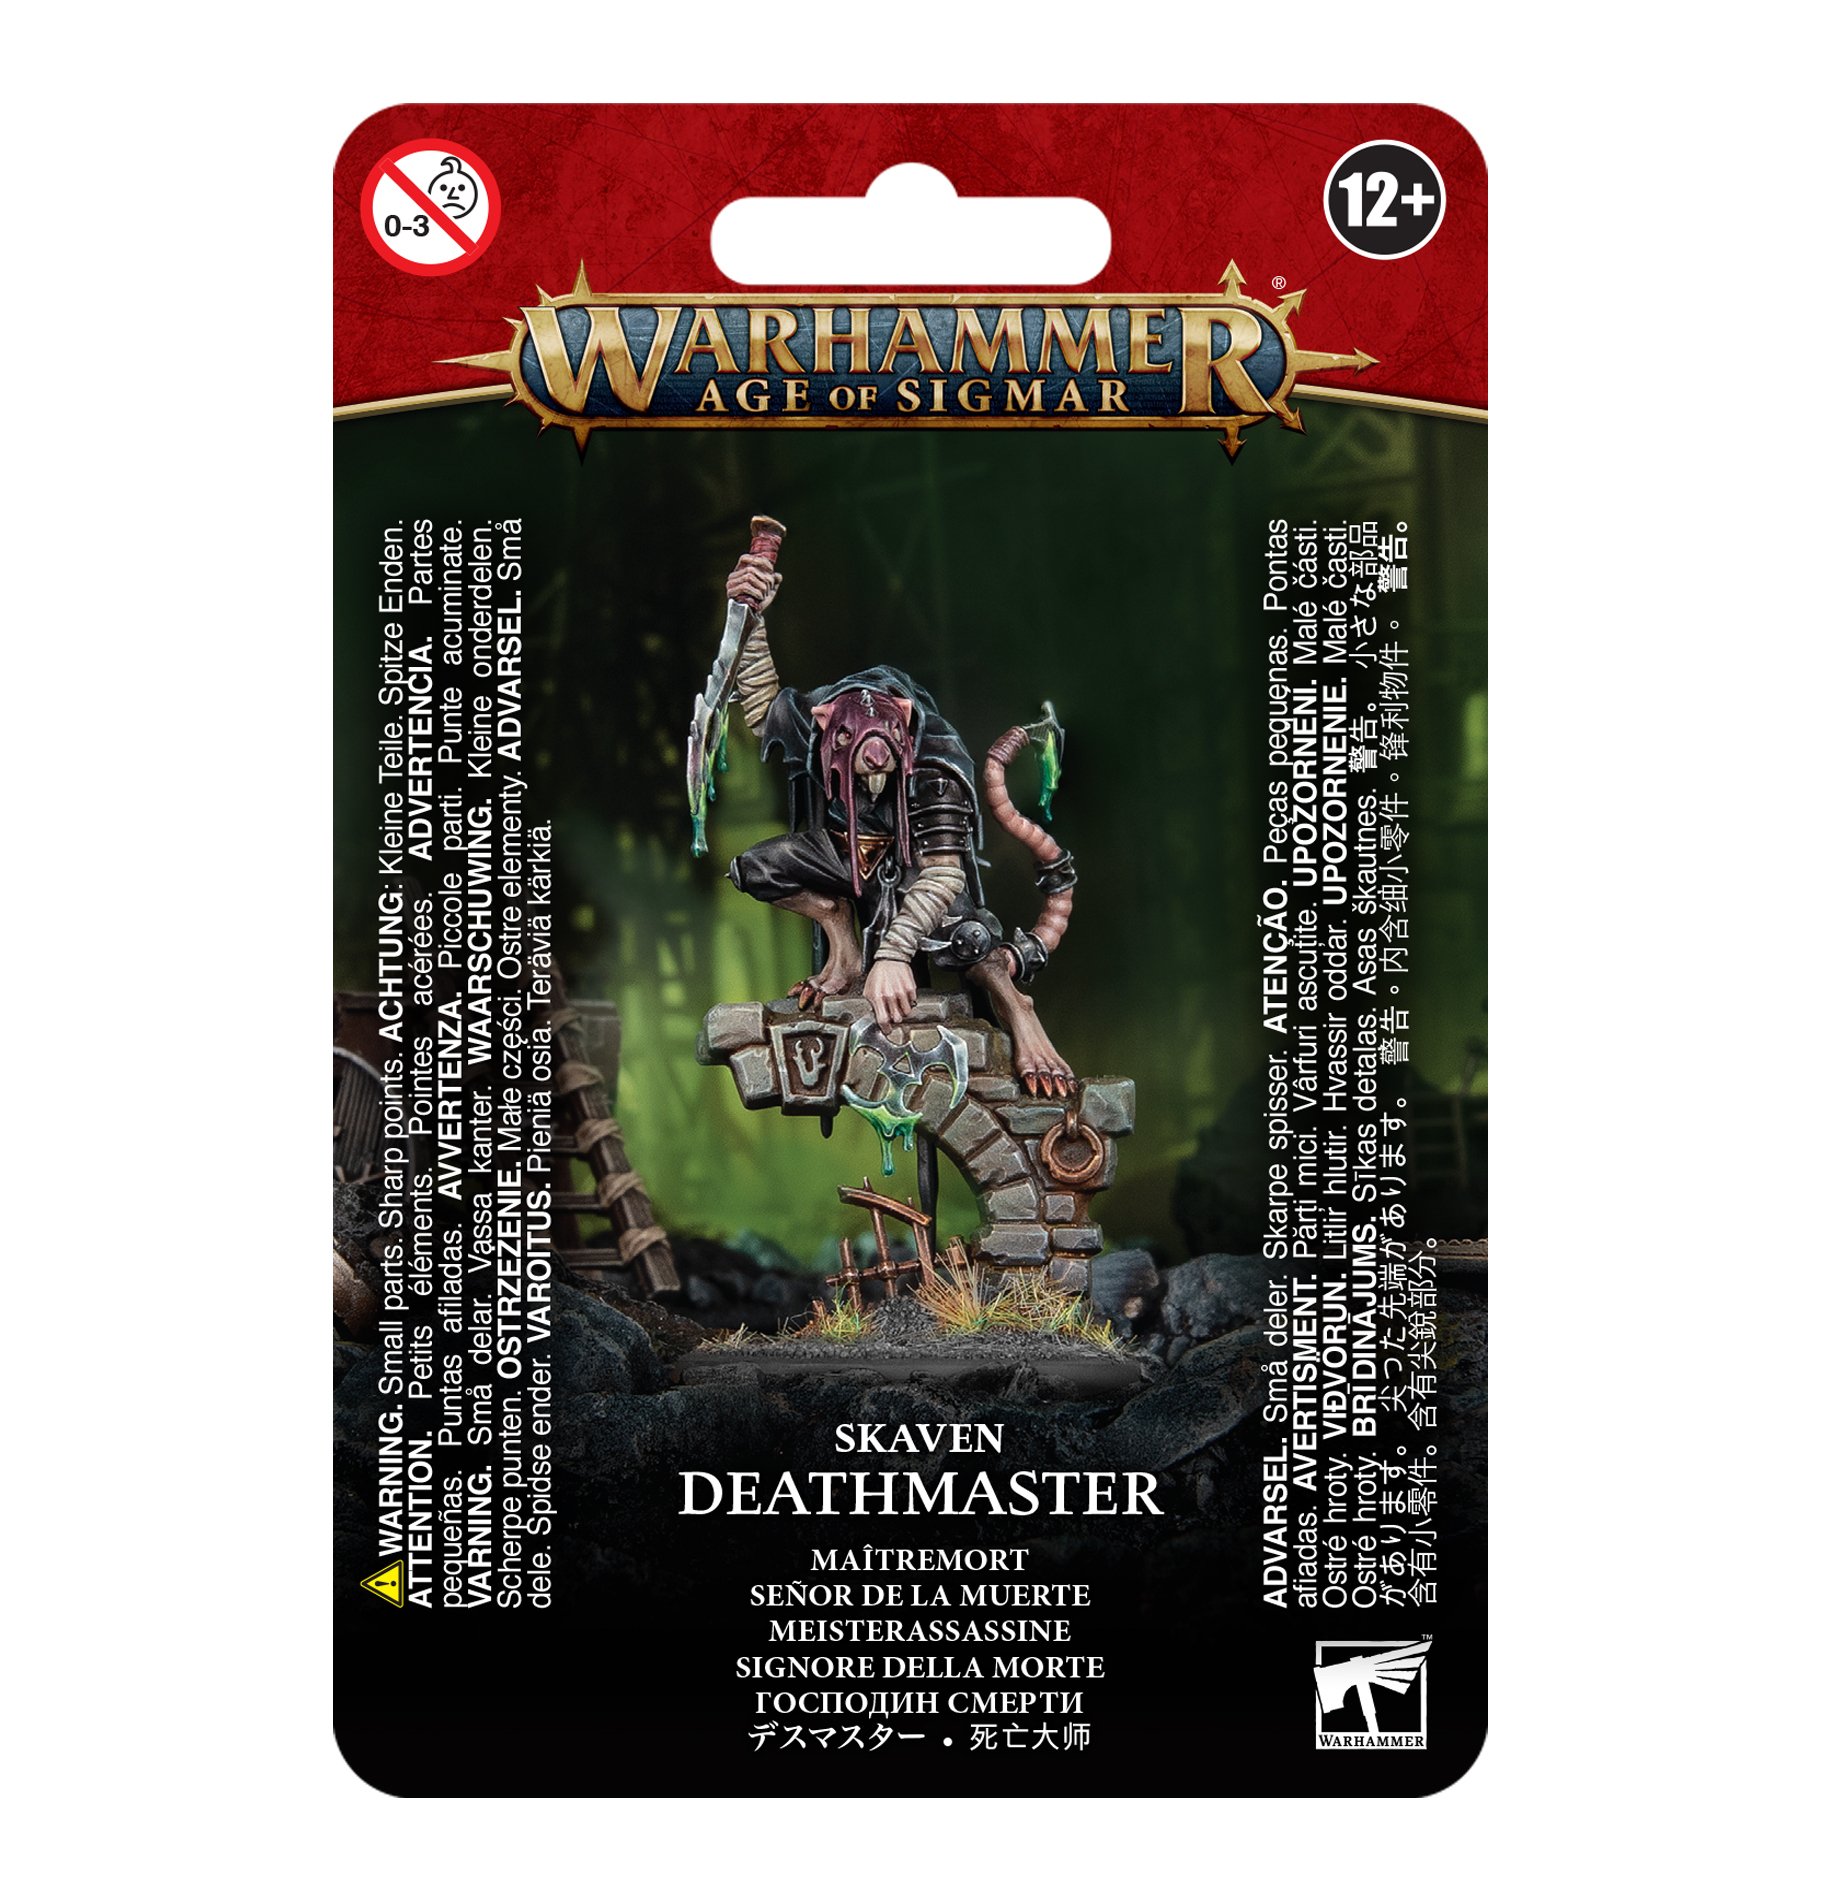 Deathmaster - 90-29 - Skaven - Warhammer Age of Sigmar